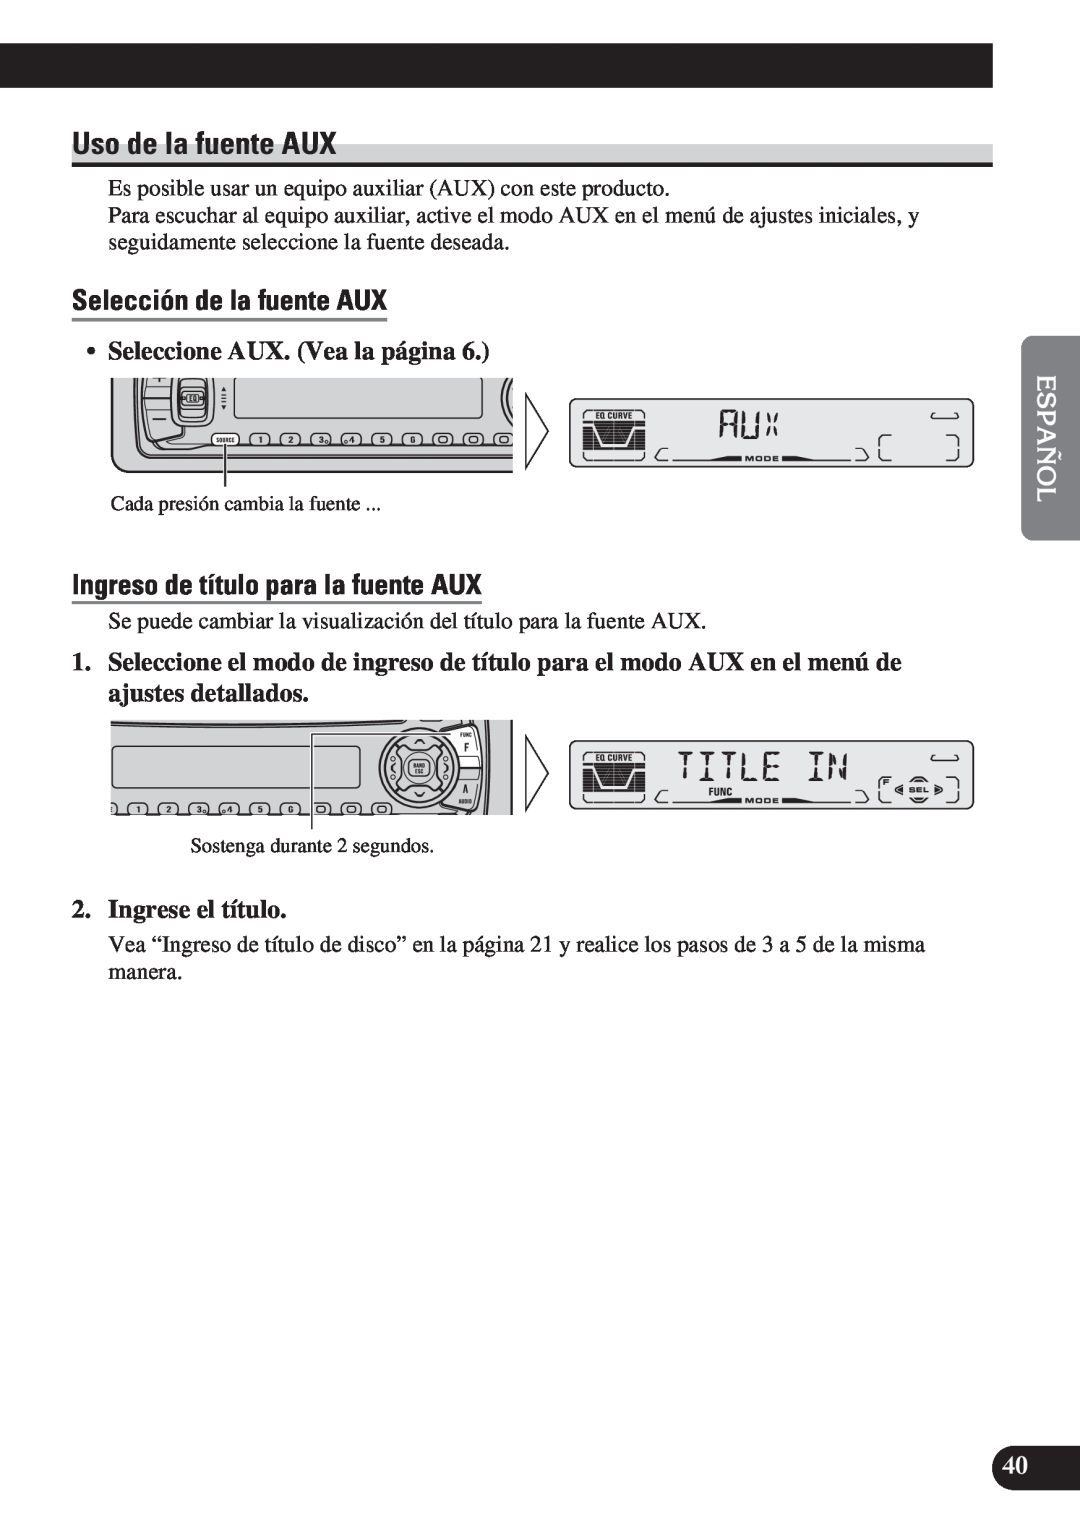 Pioneer DEH-P4150 operation manual Uso de la fuente AUX, Selección de la fuente AUX, Ingreso de título para la fuente AUX 